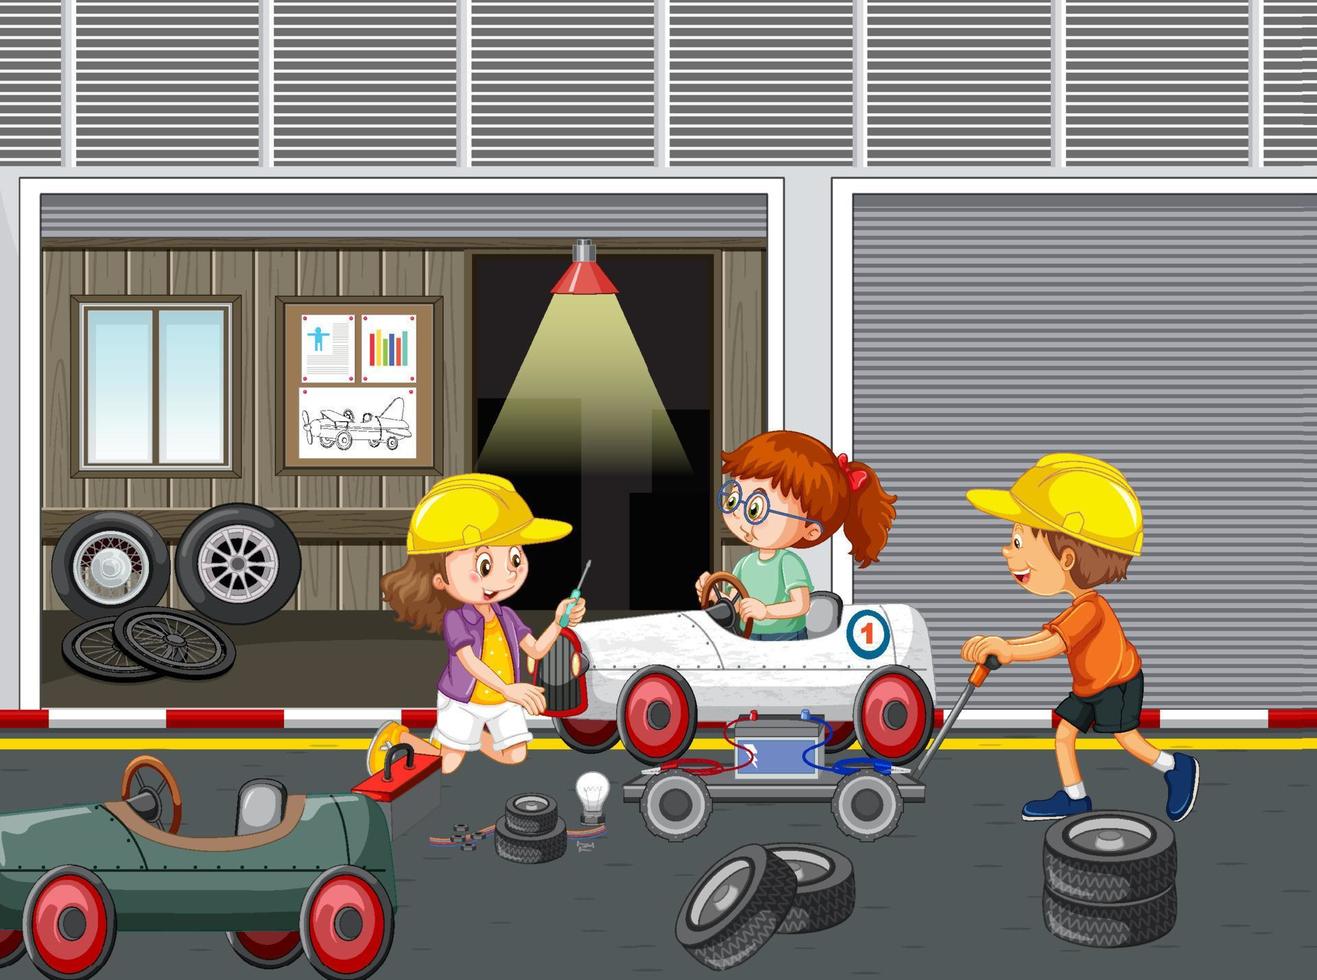 kinderen repareren samen een auto in de garage vector